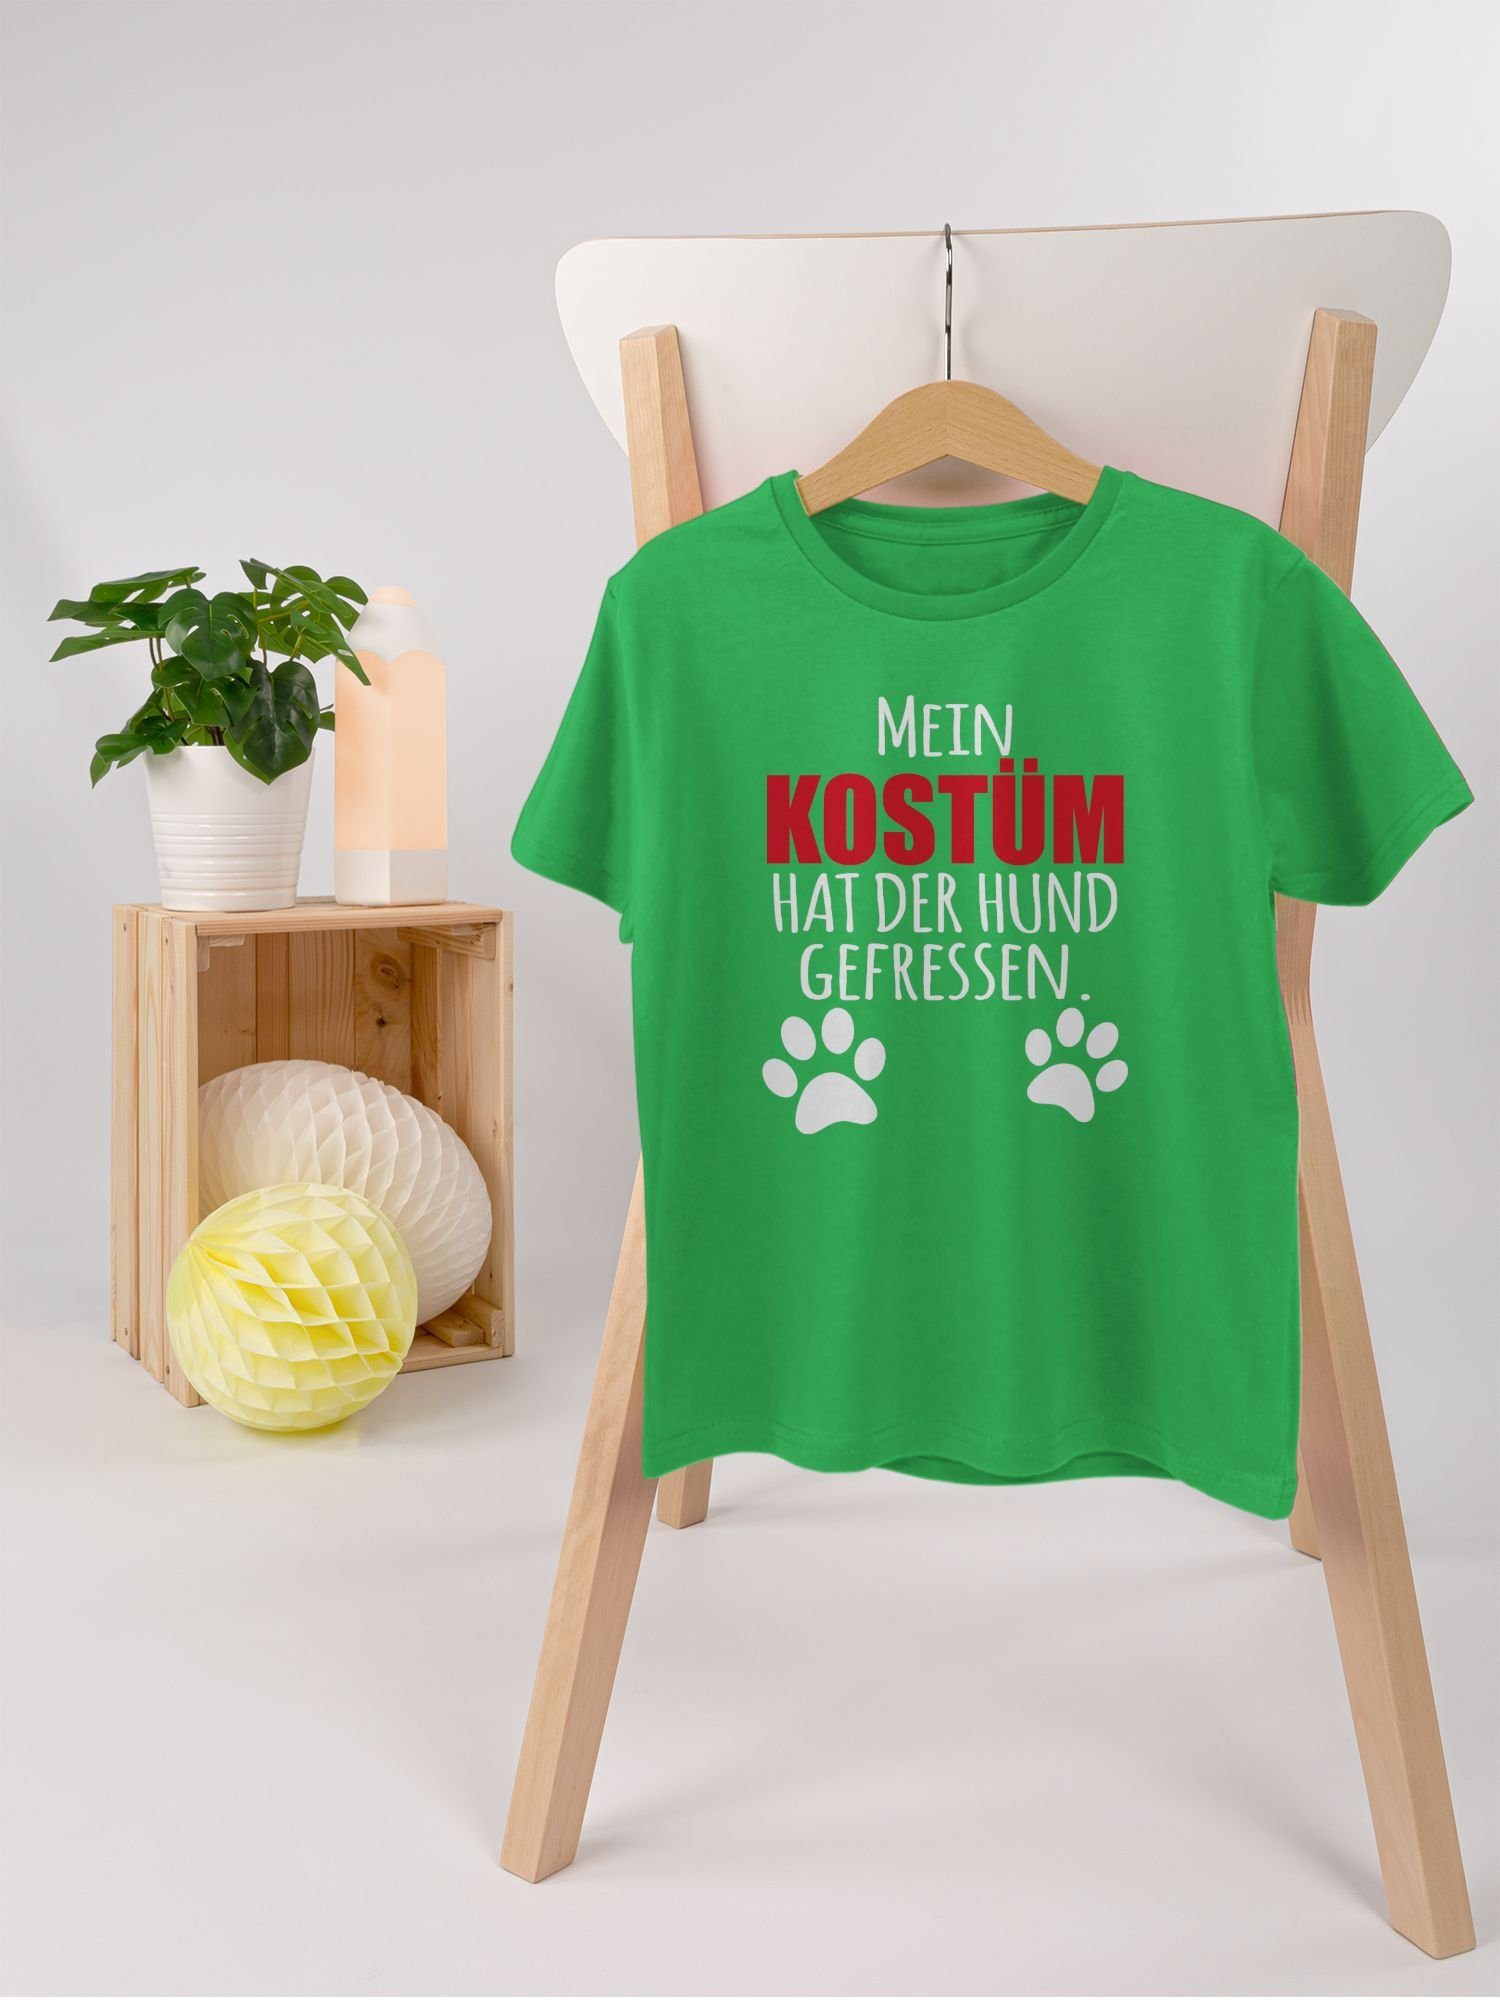 Dog Hund Karneval Faschingskostüme gefressen Kostüm - Fasching Mein der 2 & T-Shirt Shirtracer Grün Hundekostüm hat